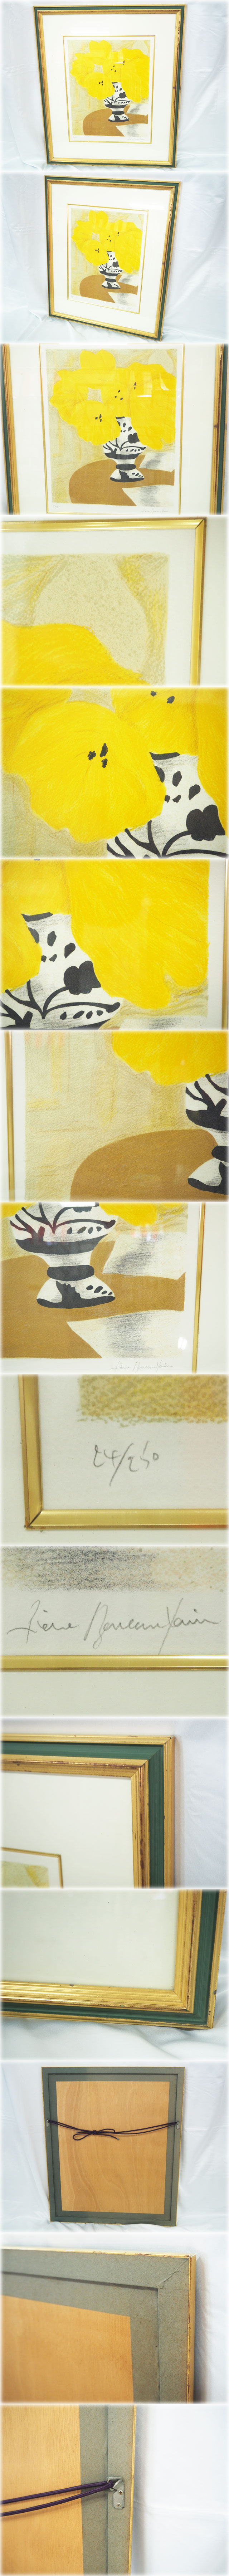 正規店人気ピエール・ボンコンパン リトグラフ 「テーブルの上の黄色いブーケ」 額付 鉛筆サインNo.24/250 Pierre Boncompain 石版画、リトグラフ